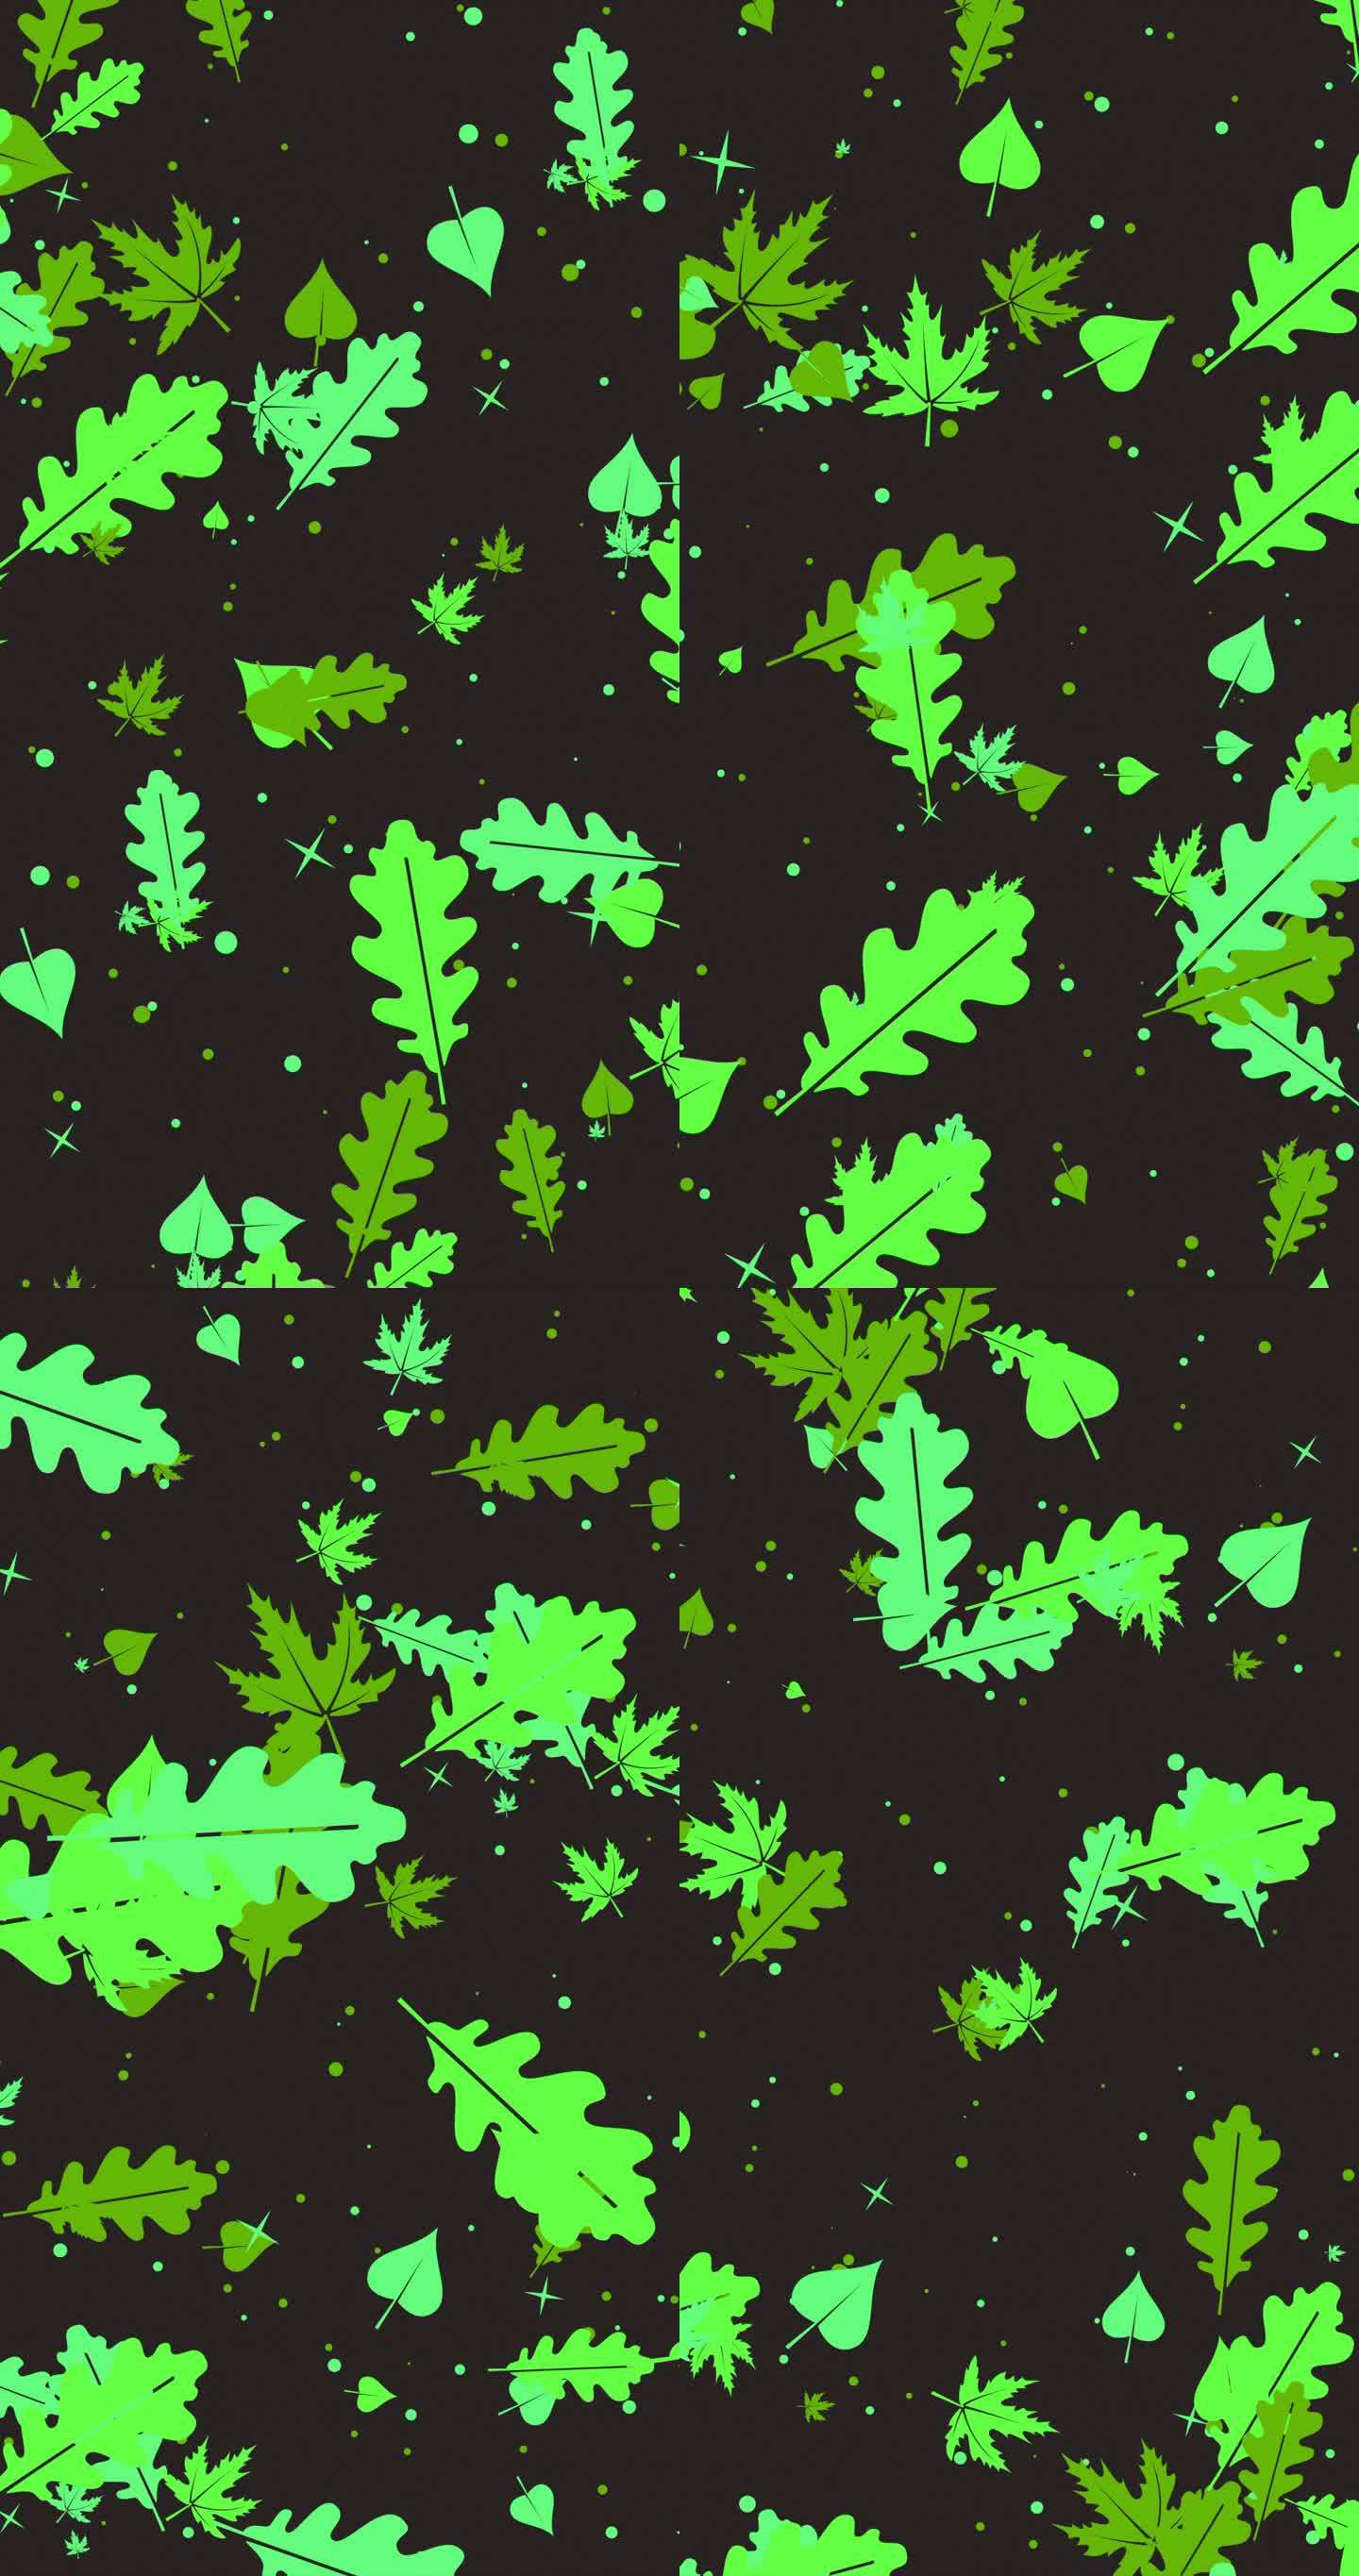 抽象的秋天背景与绿色盘旋的树叶，创造了一个富有创意的秋天设计